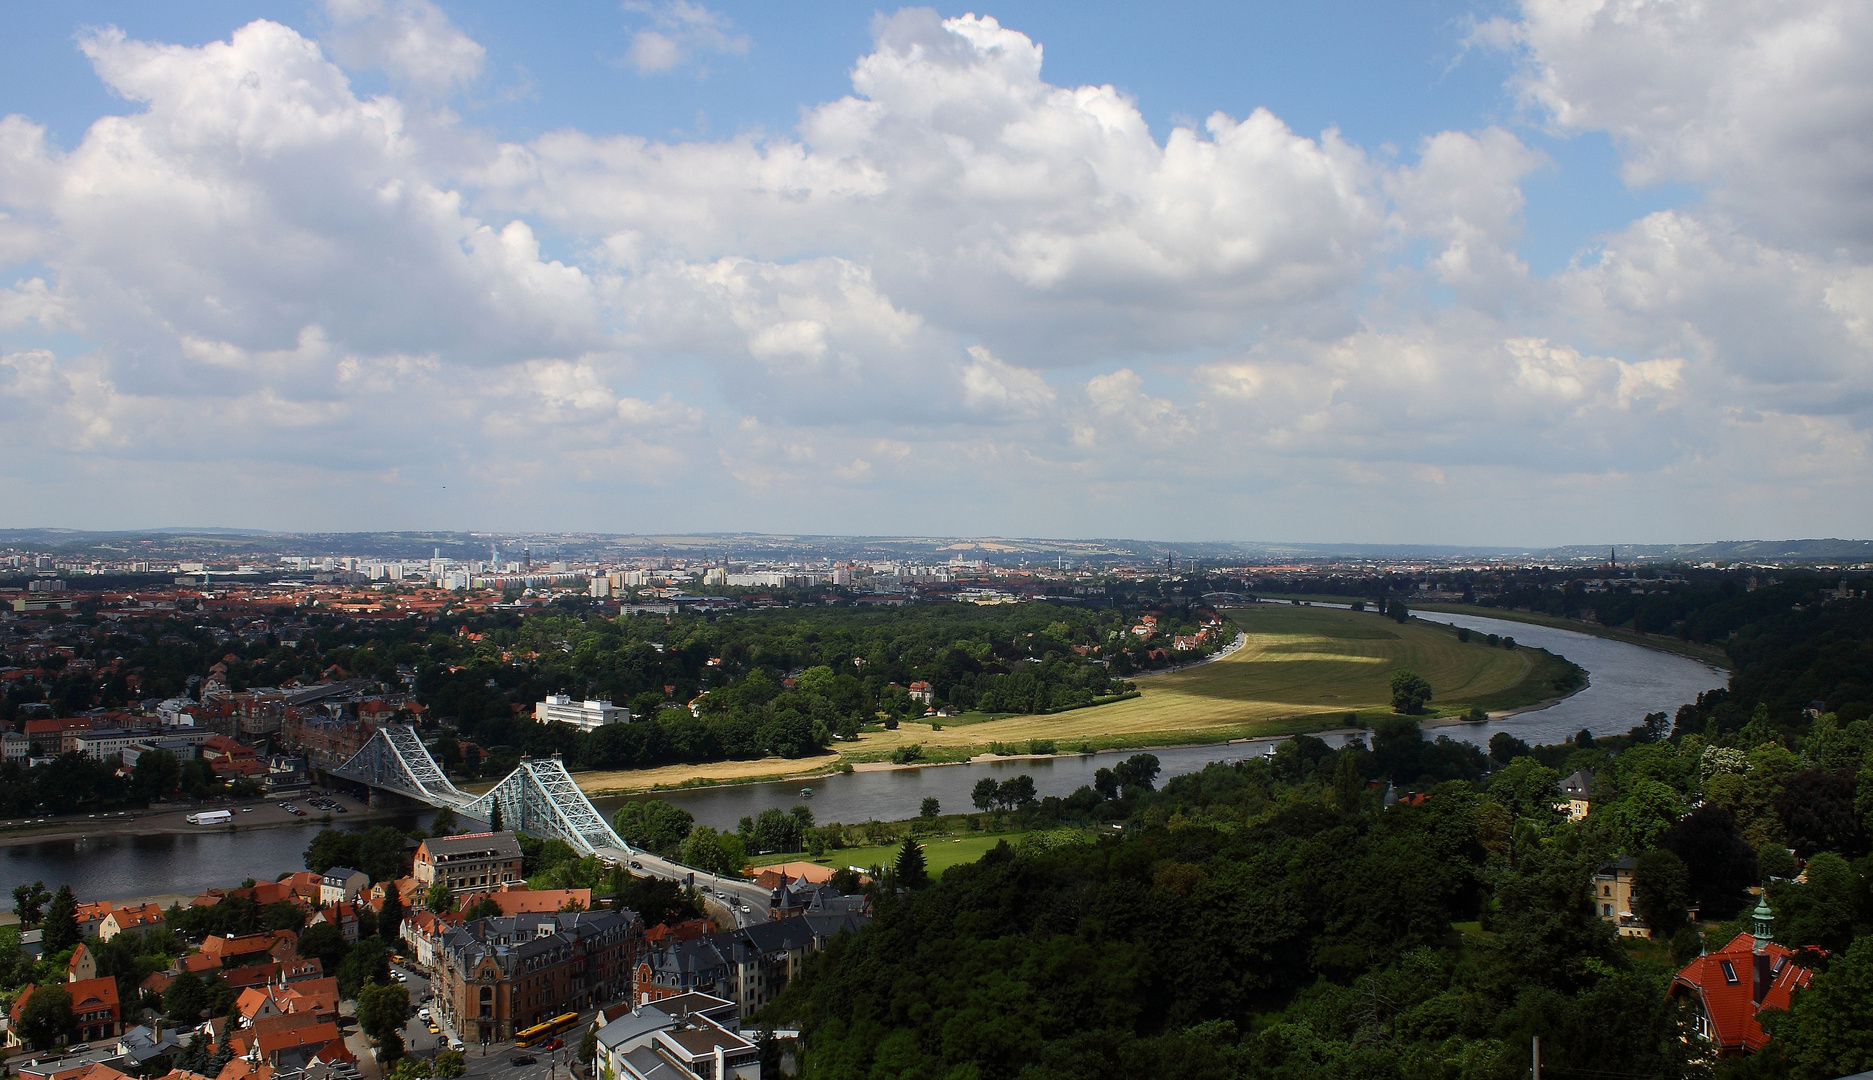 Dresden - mit blauen Wunder und der Elbe